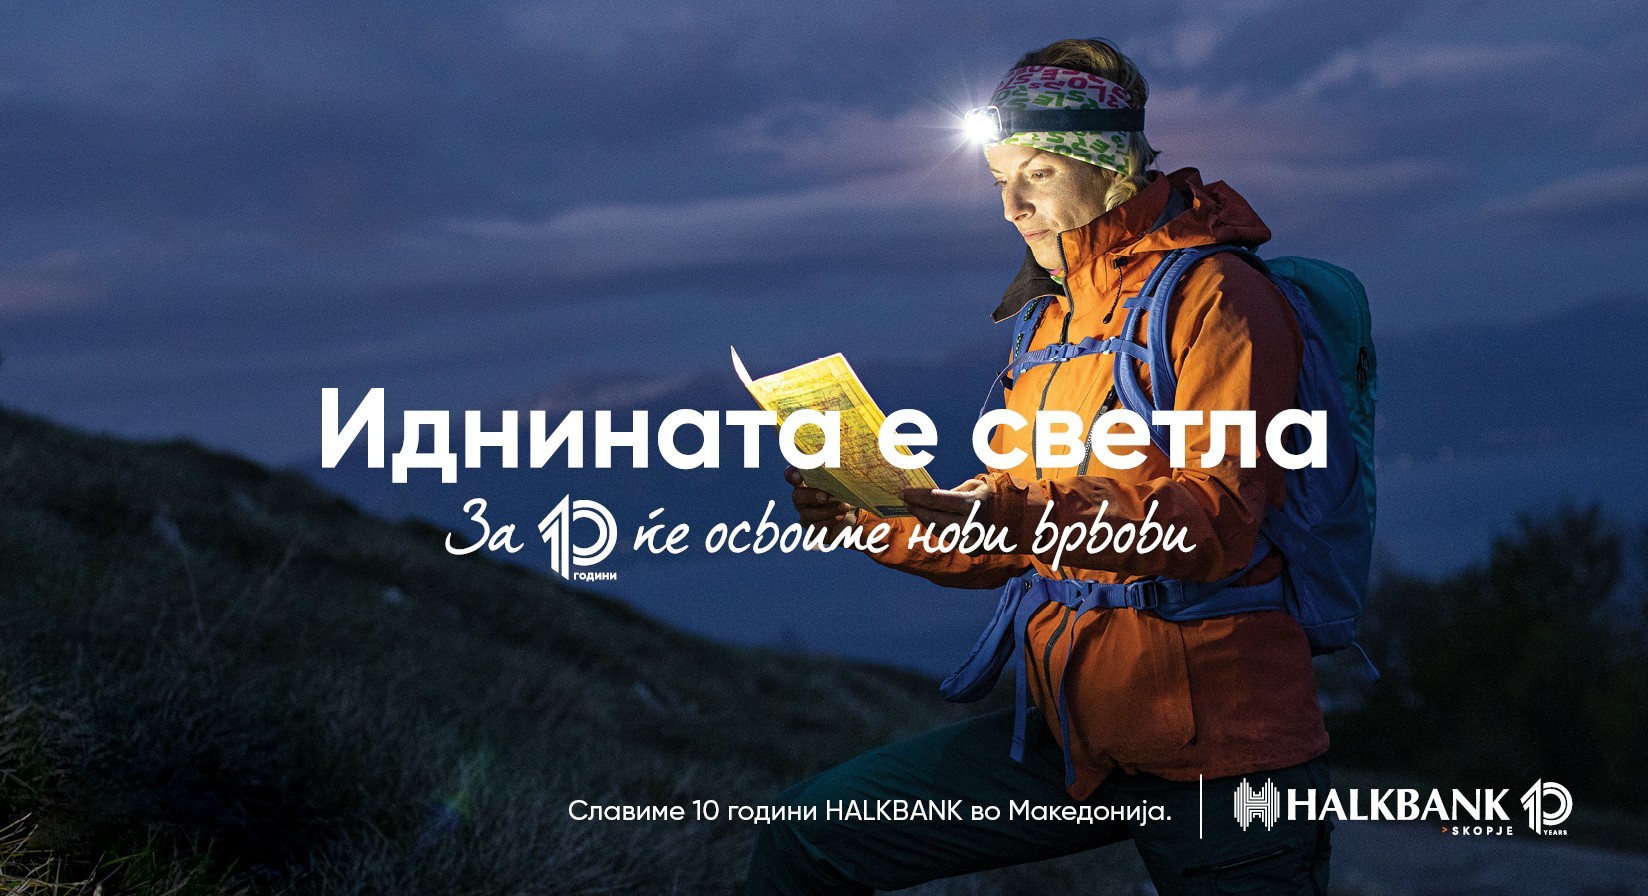 Илина Арсова, хероината што ги искачи седумте светски врвови: „Сонувам за идните светски врвови во следните 10 години“